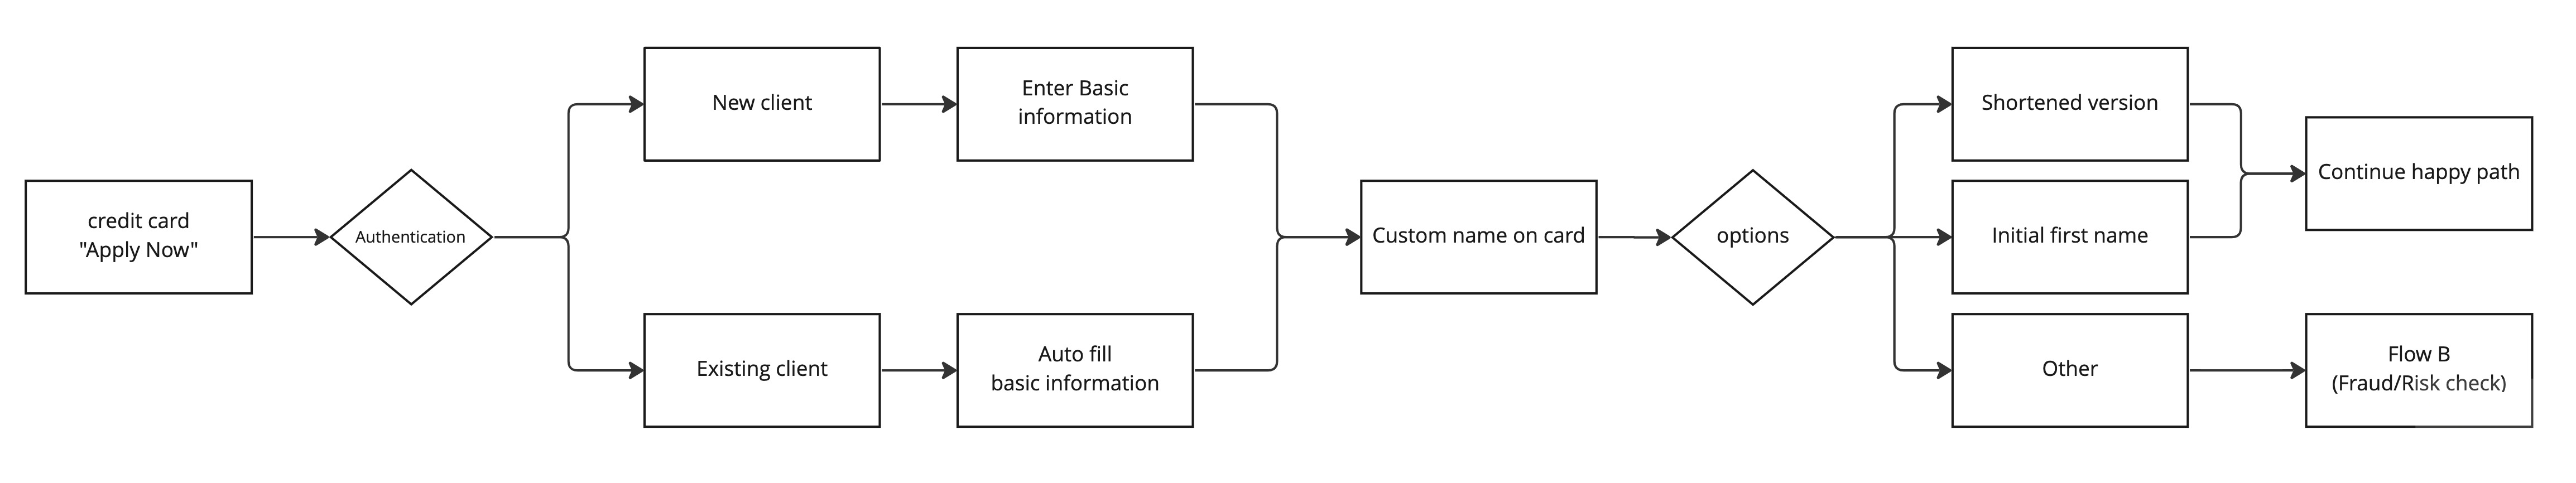 user flow for custom name on card